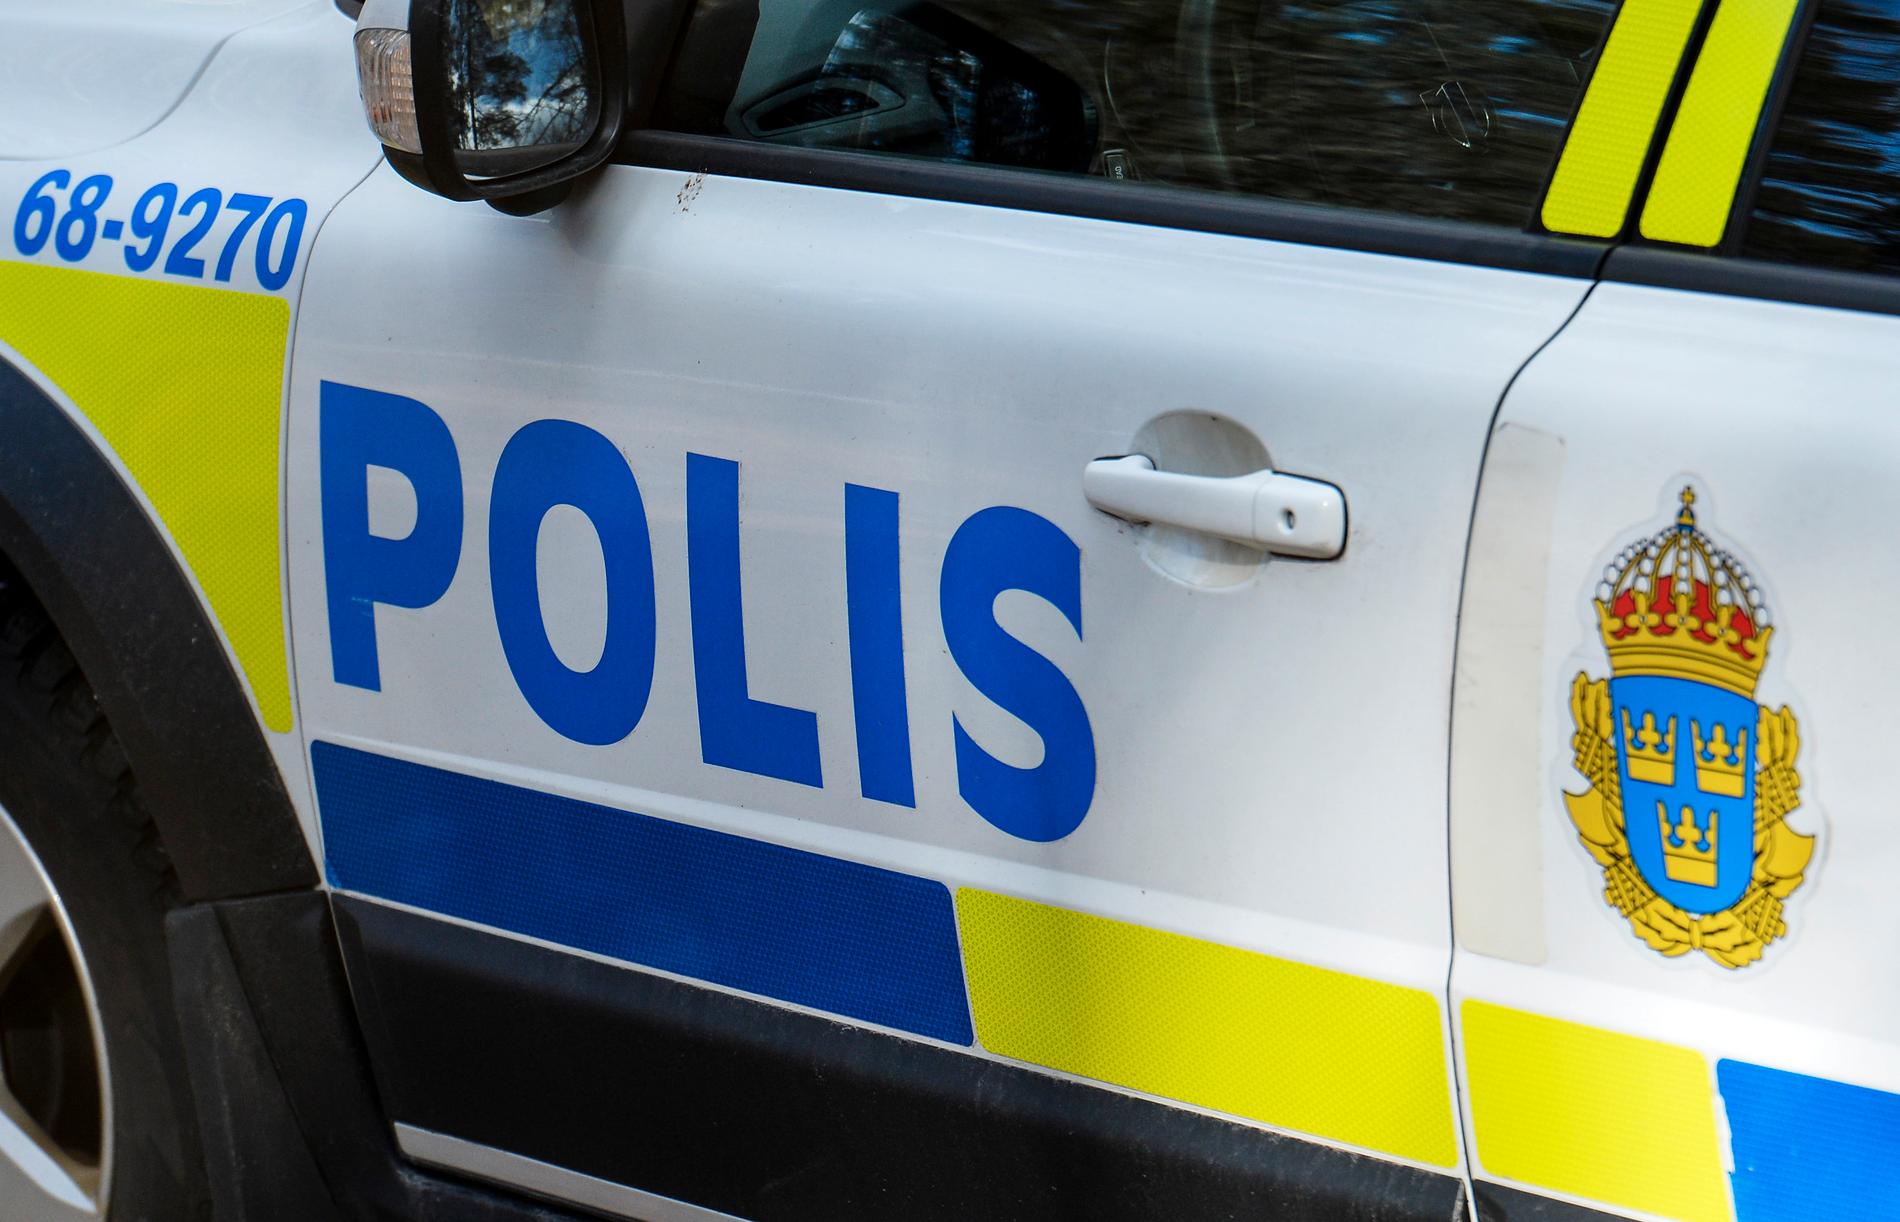 Polis utreder misstänkt mord i Vänersborg. Arkivbild.